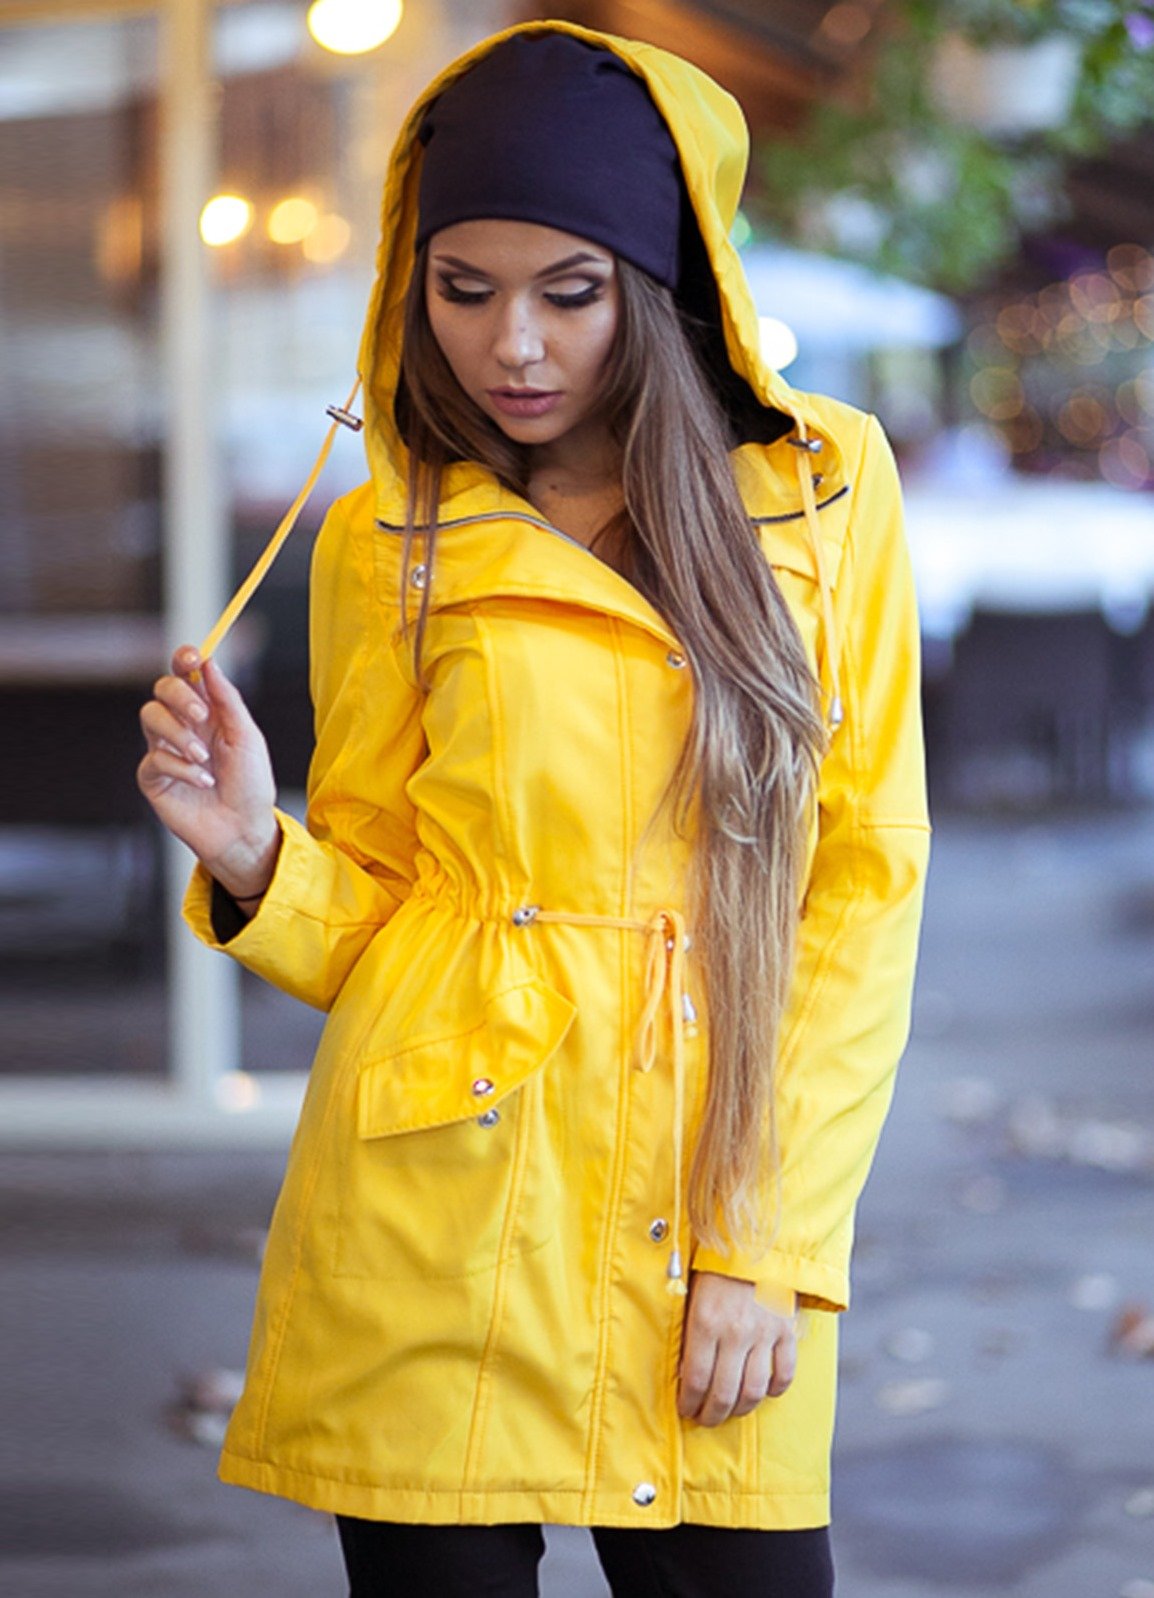 Шапка к желтой куртке - 62 фото